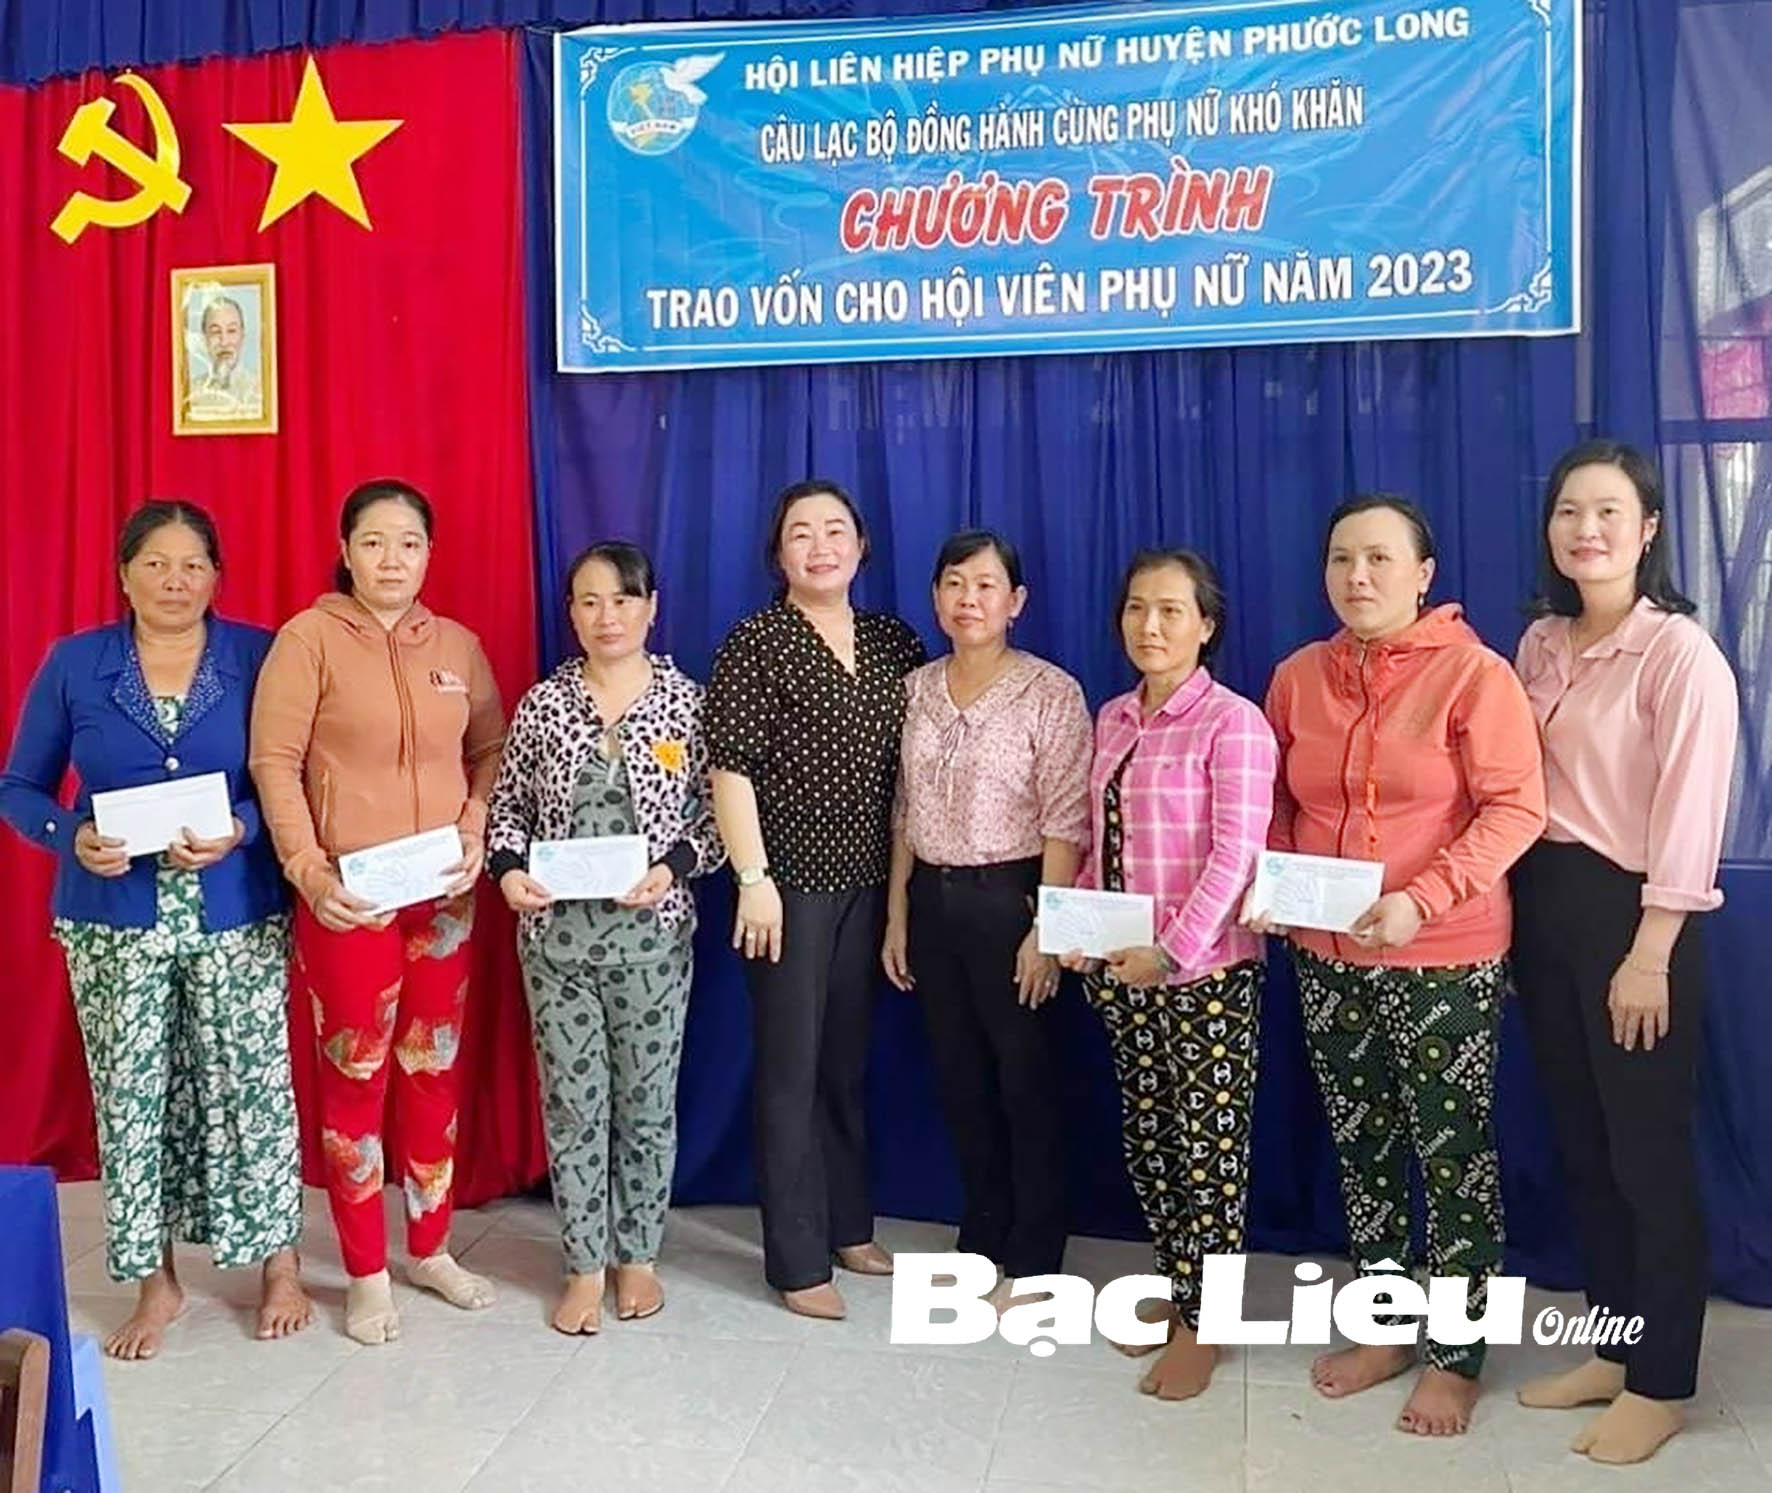 Huyện Phước Long: Đảm bảo an sinh xã hội, nâng cao chất lượng cuộc sống người dân